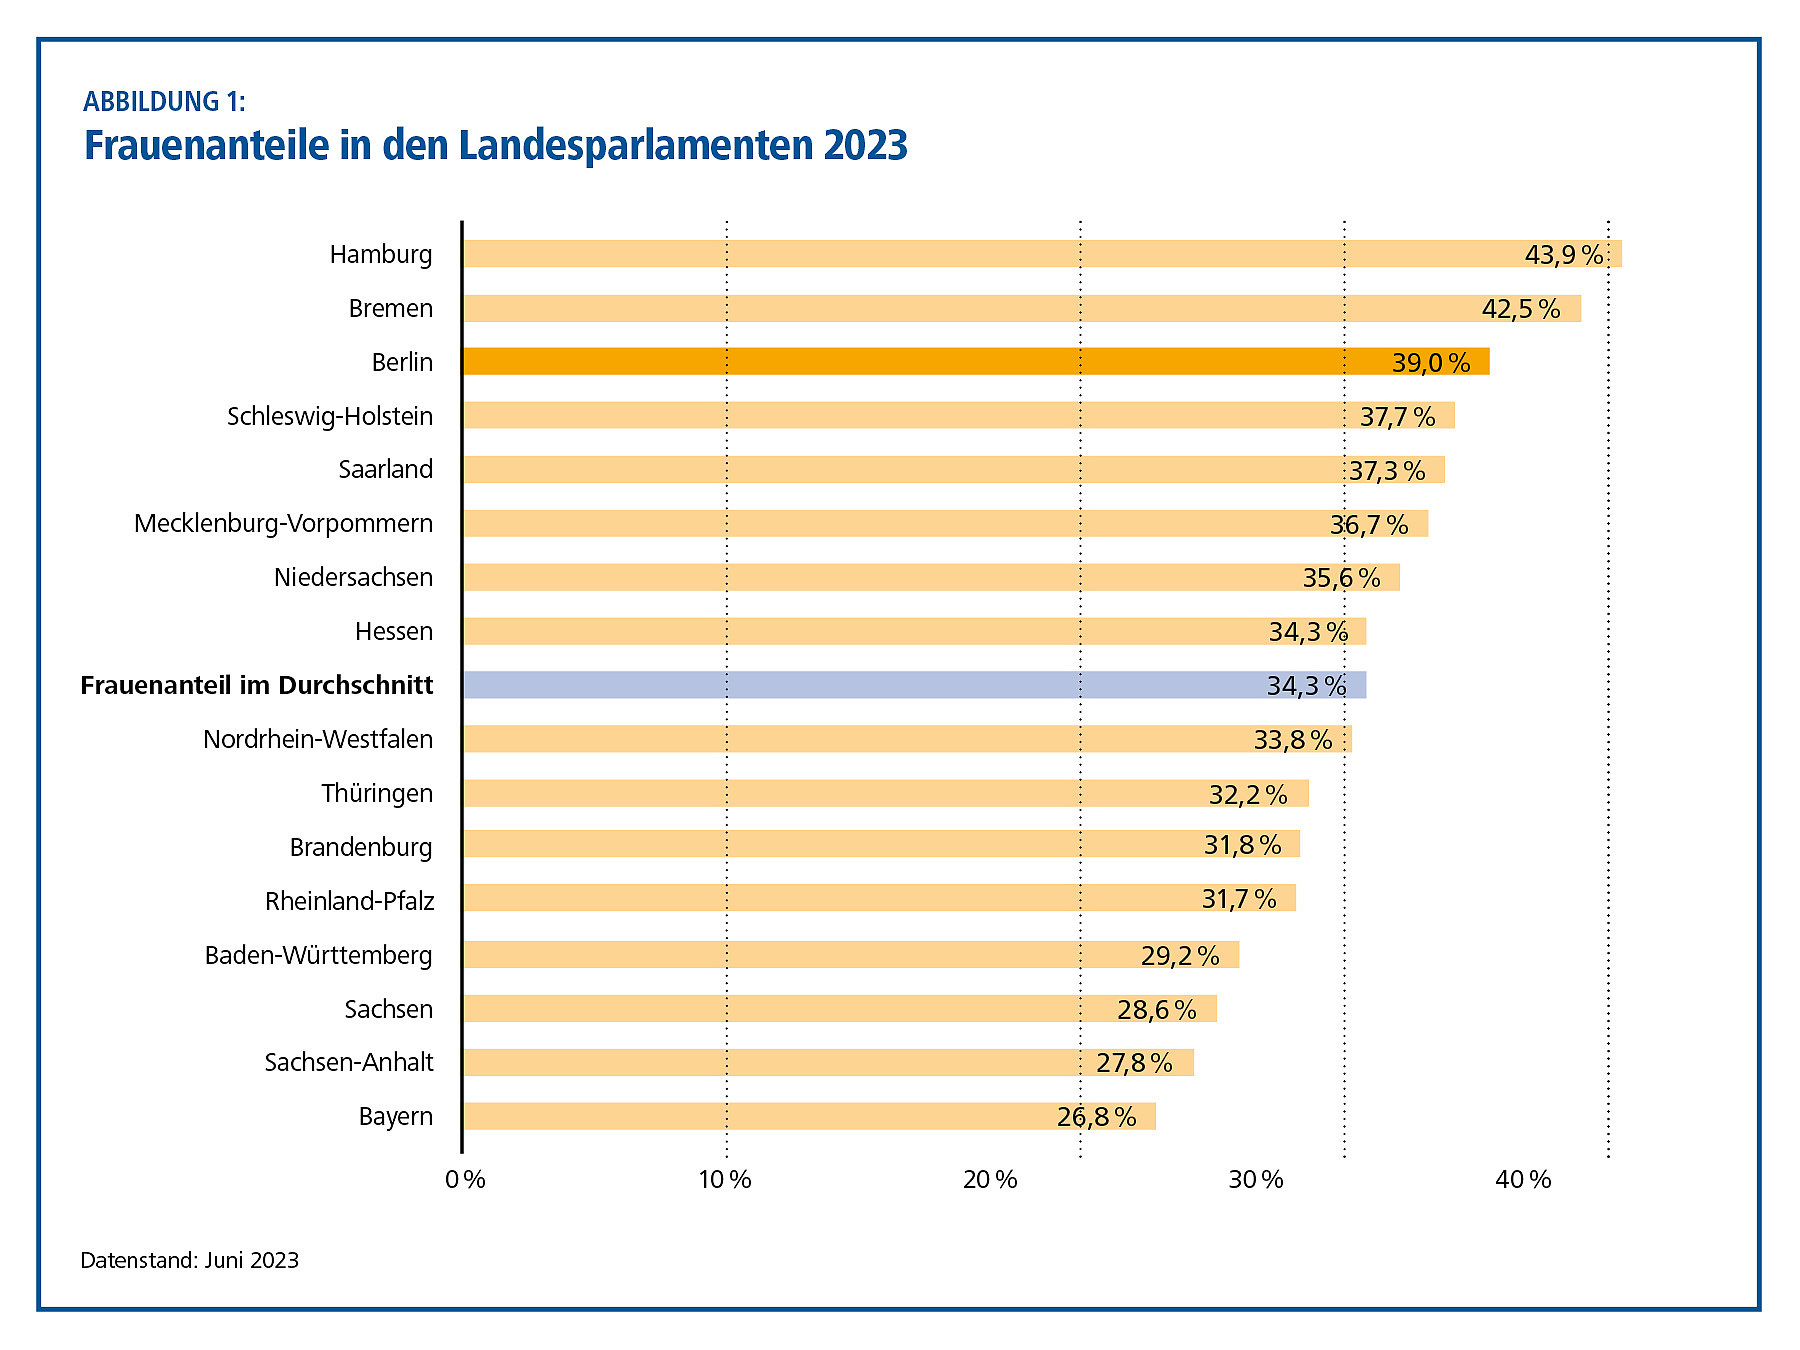 Frauenanteile in den Landesparlamenten, Hamburg am höchsten mit 43,9%, Bayern am niedrigsten mit 26,8%